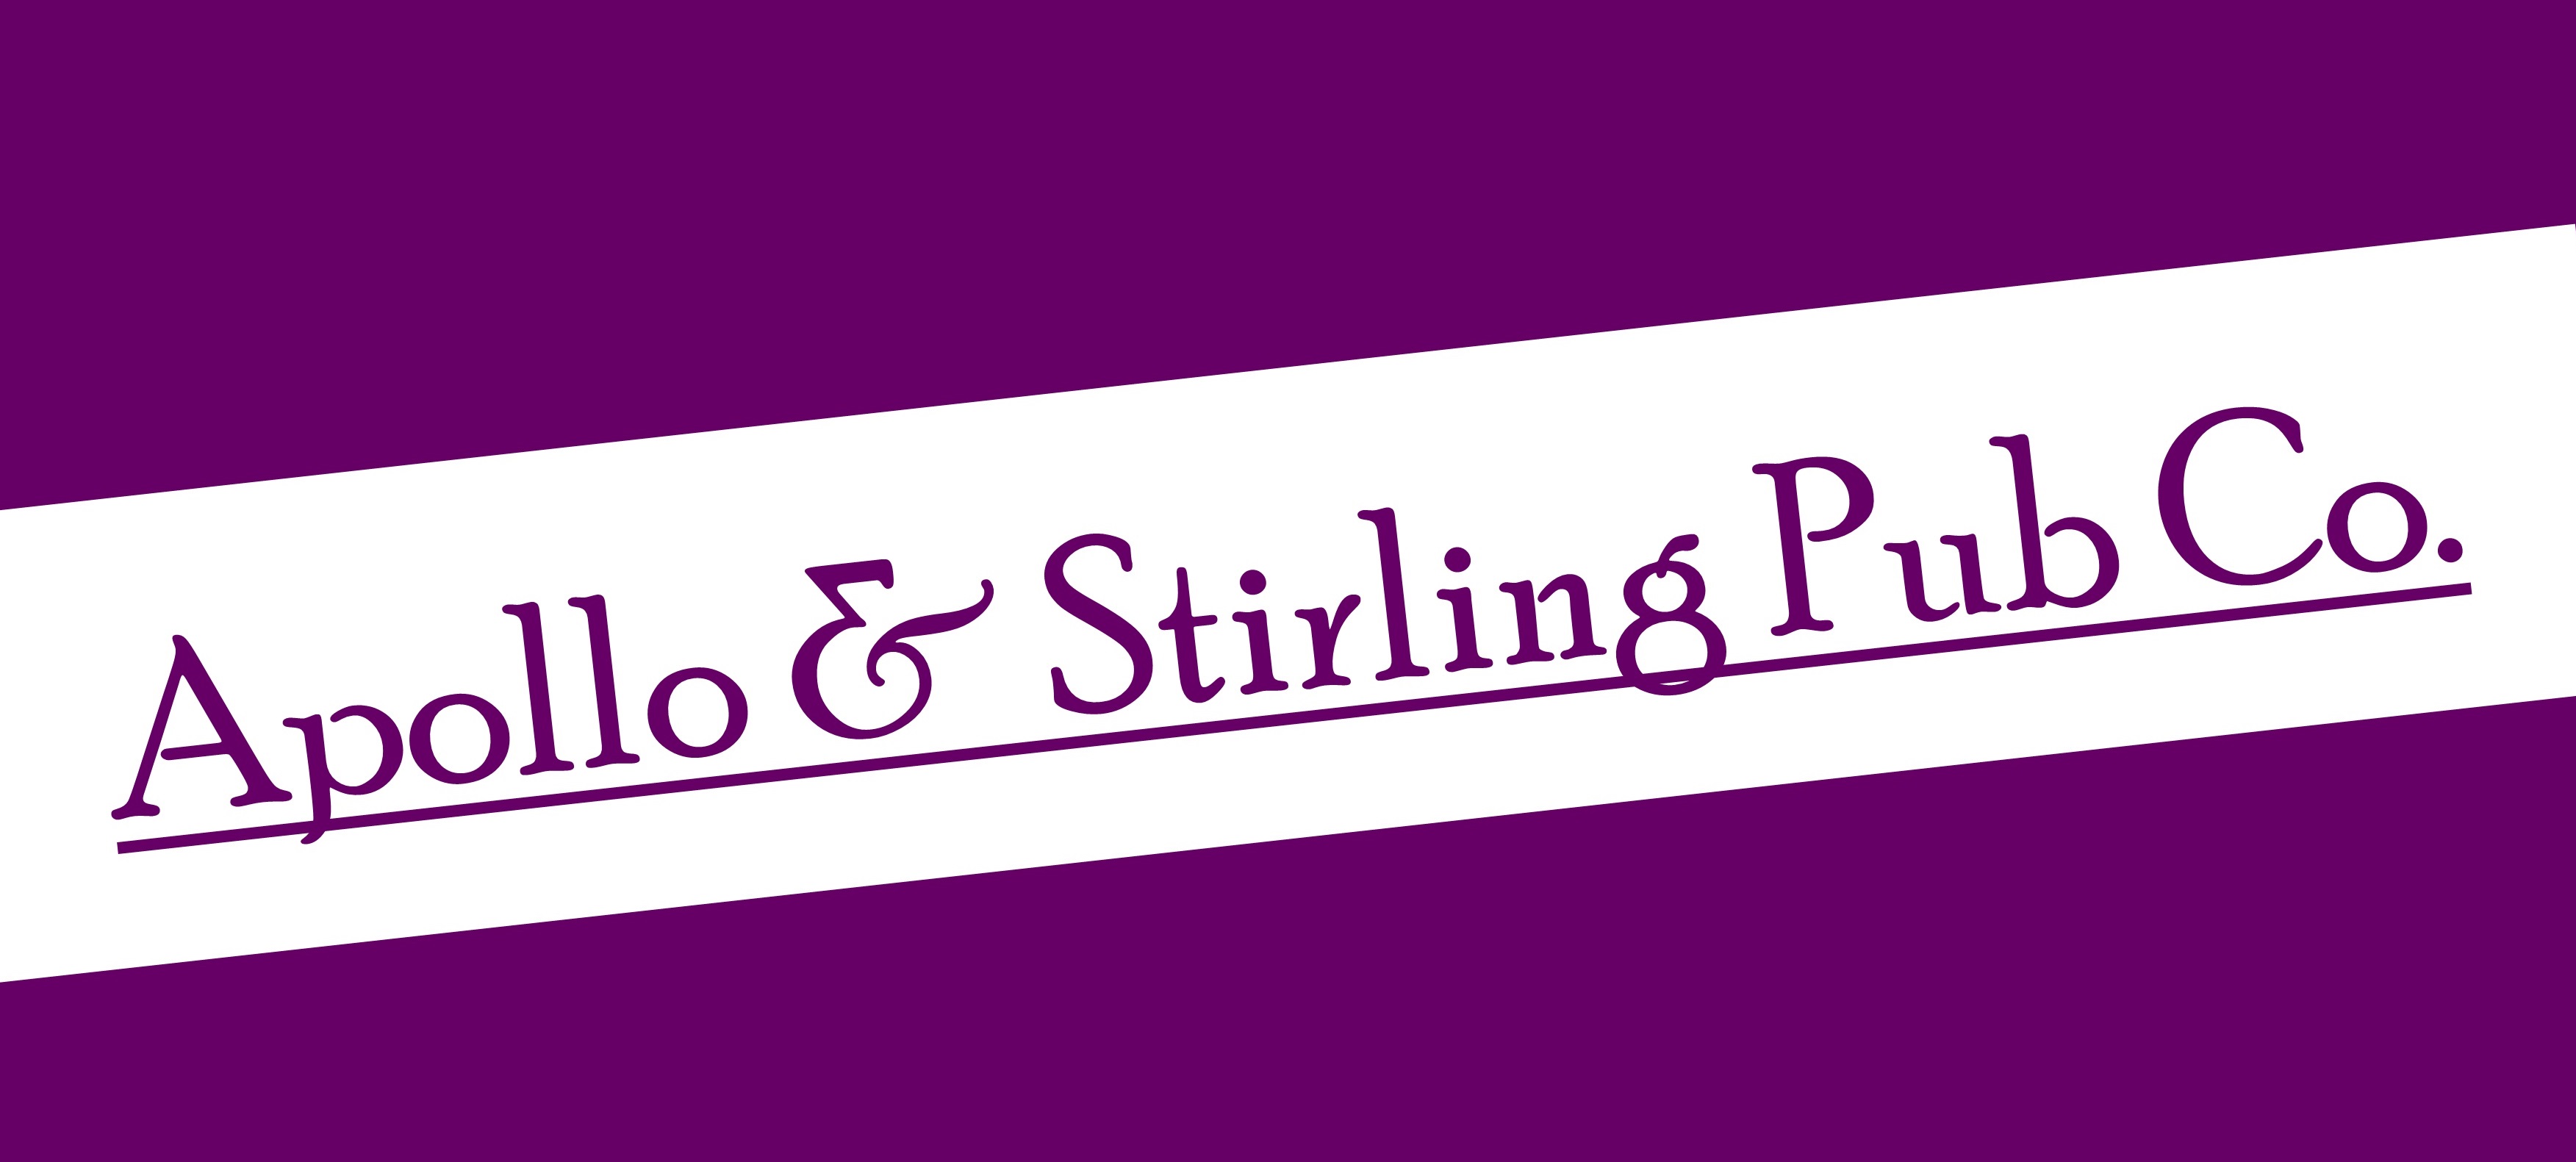 logo for Apollo & Stirling Pub Company